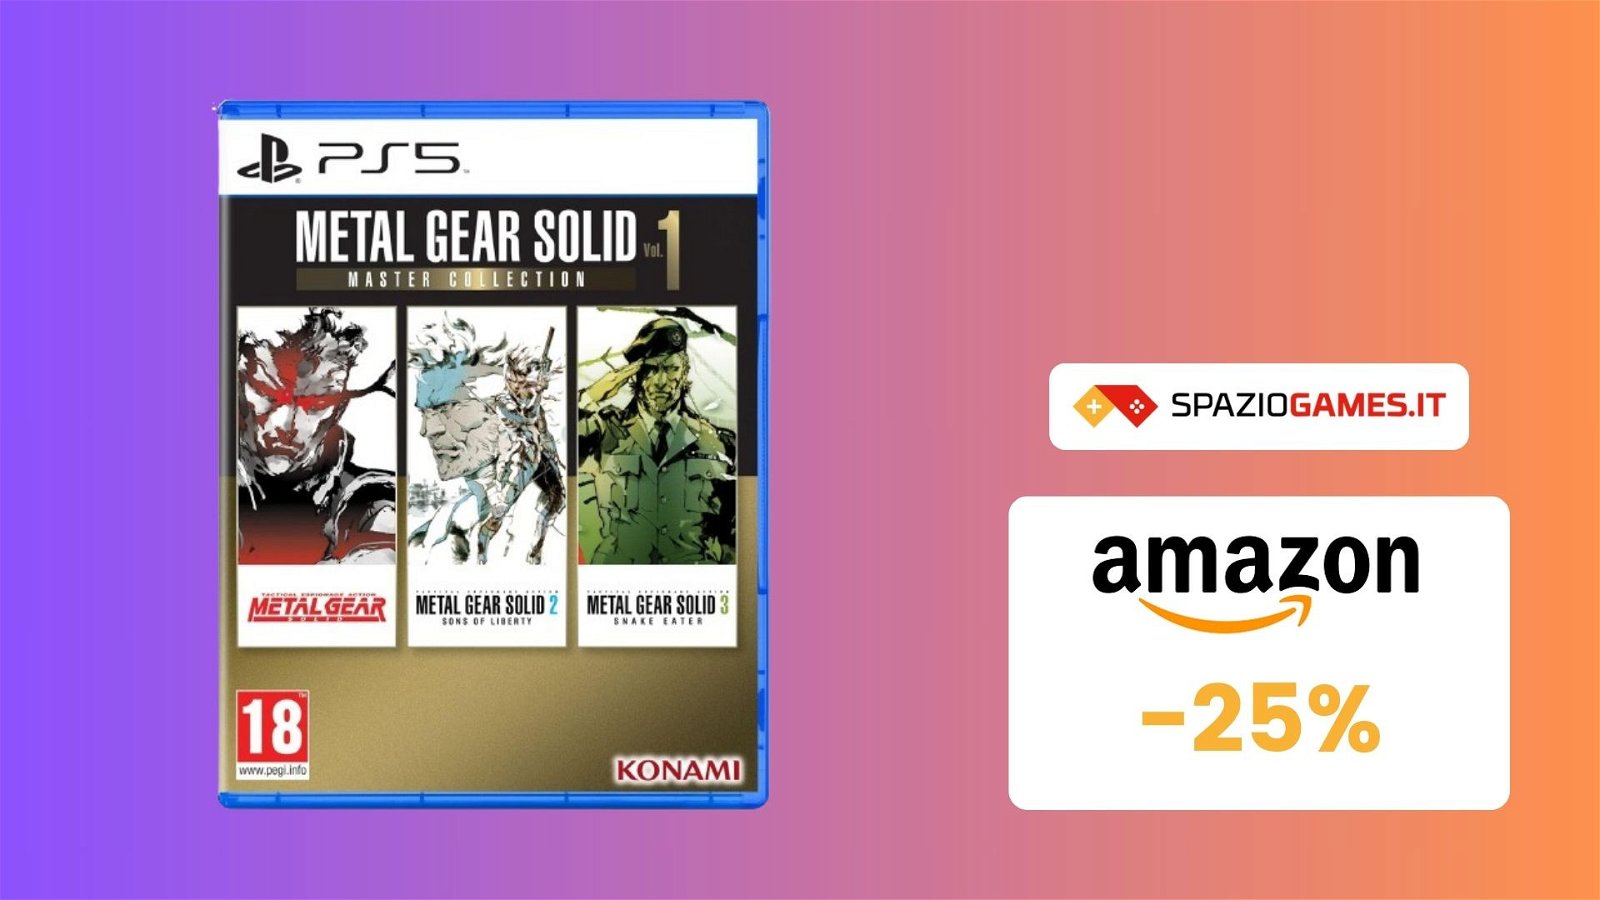 Rivivi la saga di Metal Gear Solid con la Master Collection Vol. 1! Oggi con il 25% di SCONTO!